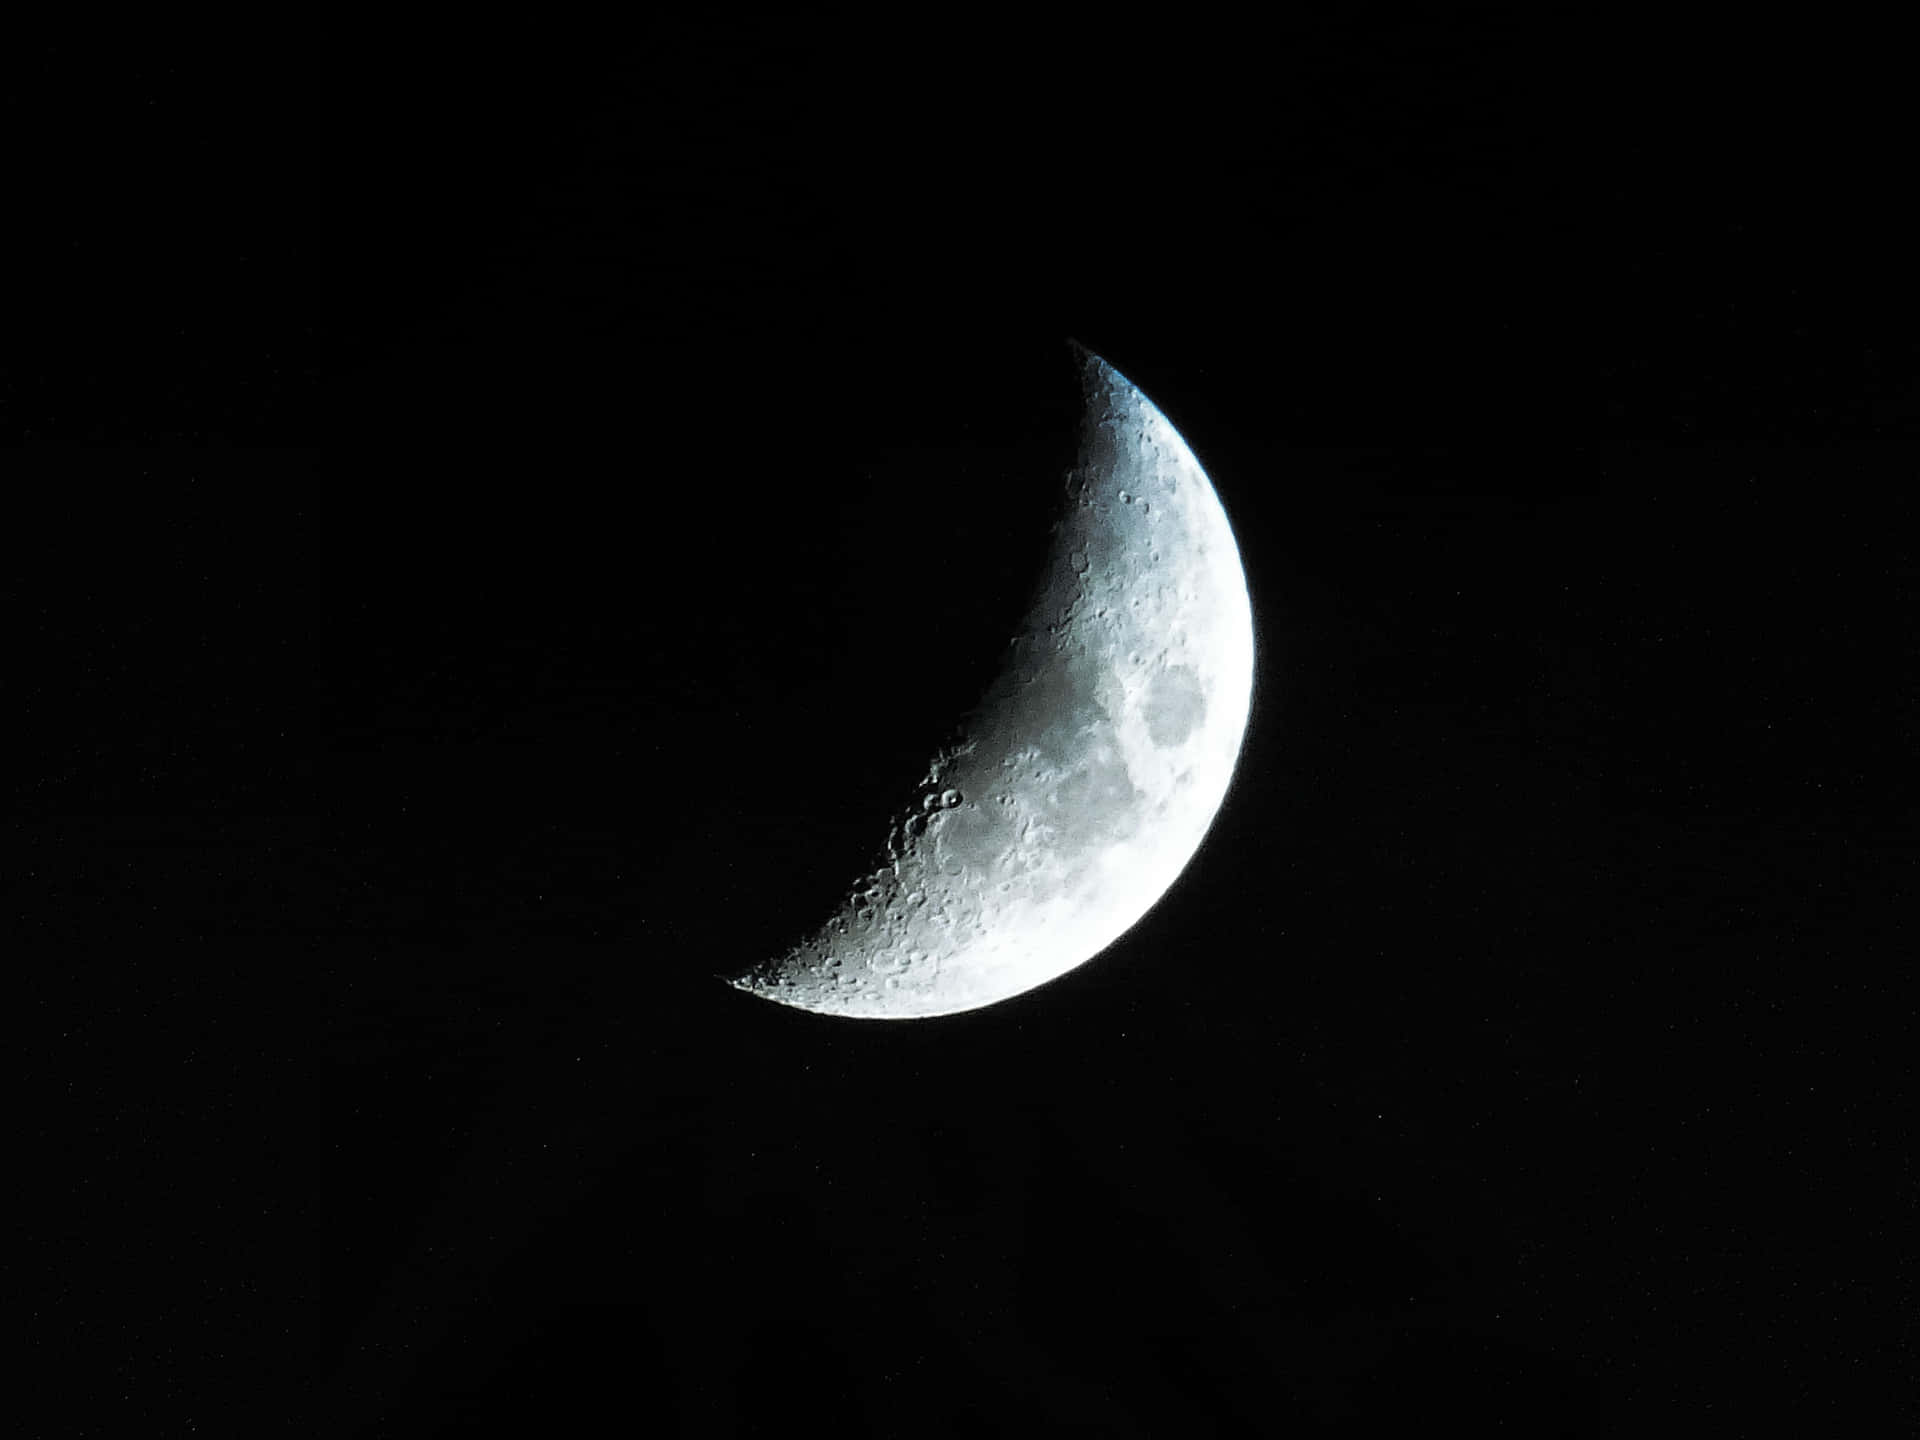 Imagende La Luna Creciente Plateada.